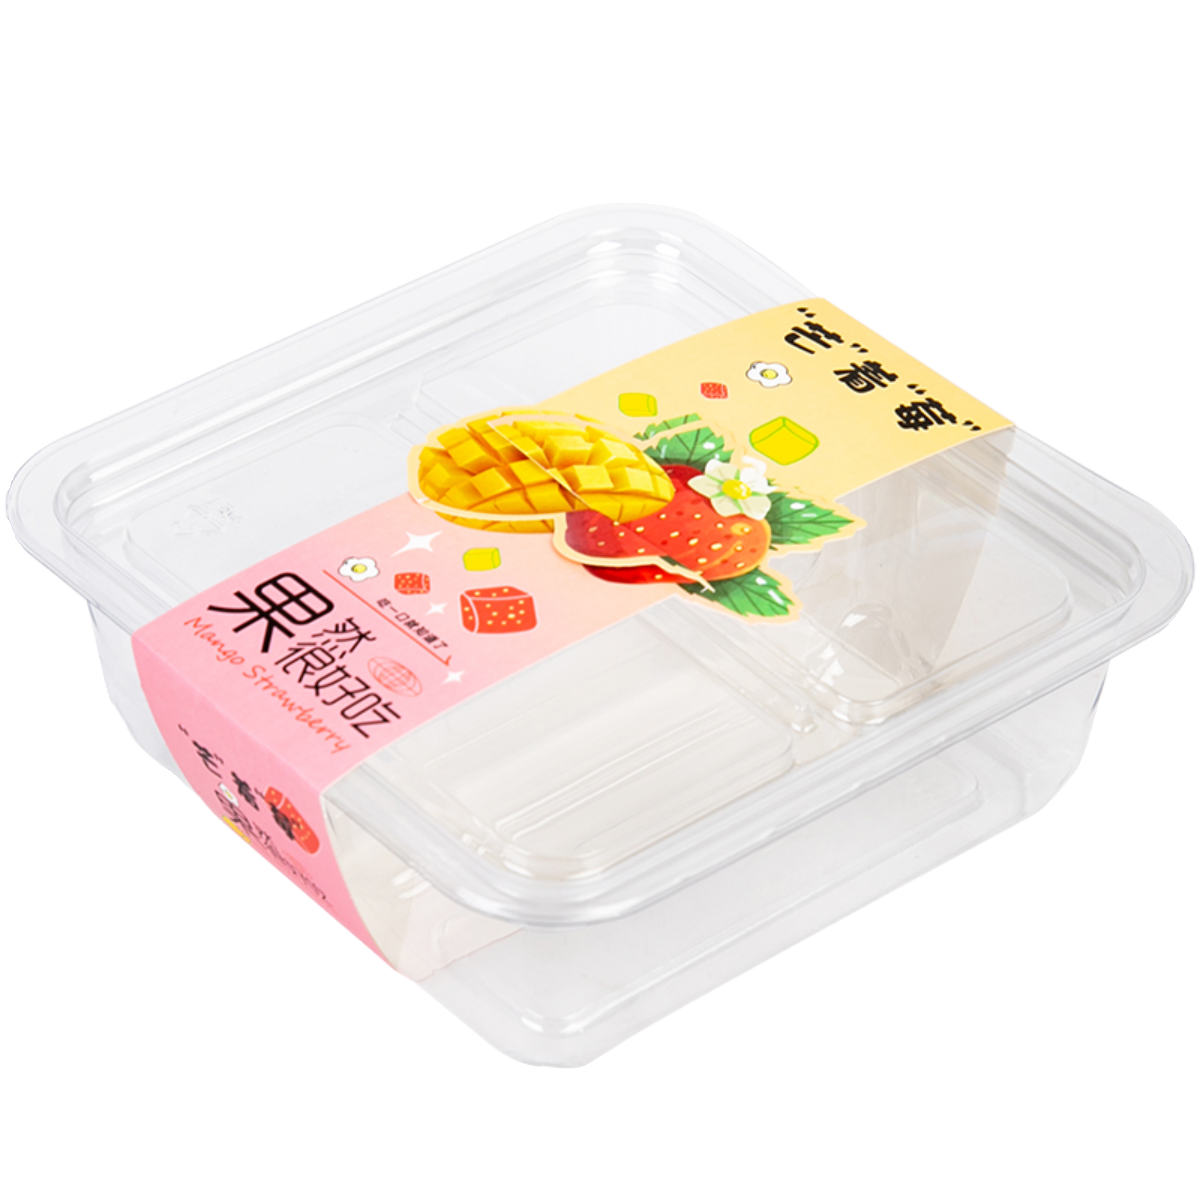 新款芒着莓透明塑料慕斯包装盒烘焙甜品布丁芒果草莓打包蛋糕盒子 - 图3